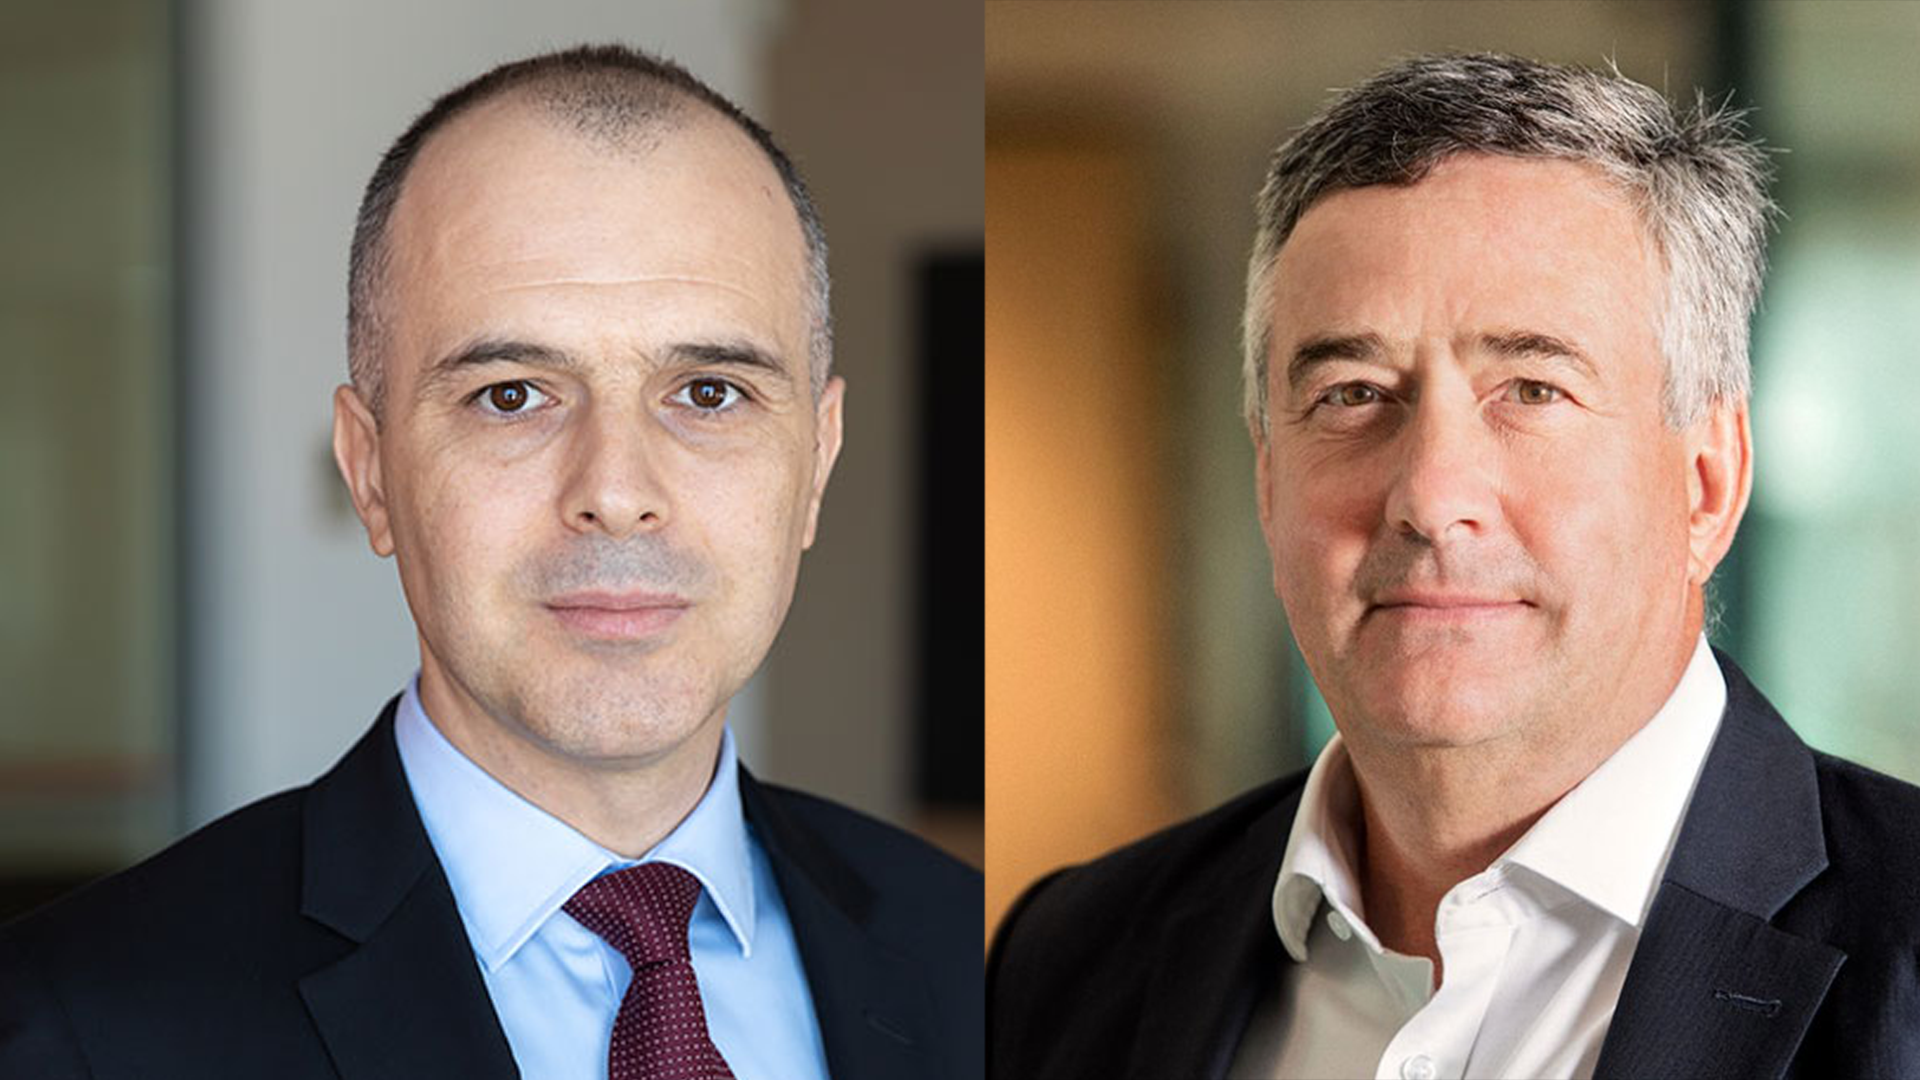 Andrew Bester, directorul global wholesale ING, şi Florin Ilie, vicepreşedinte corporate ING România: Companiile rezistă destul de bine şi au putut să absoarbă şocurile economice. Vedem o reluare a investiţiilor. Vedem în continuare oportunitate de creştere a ING în România